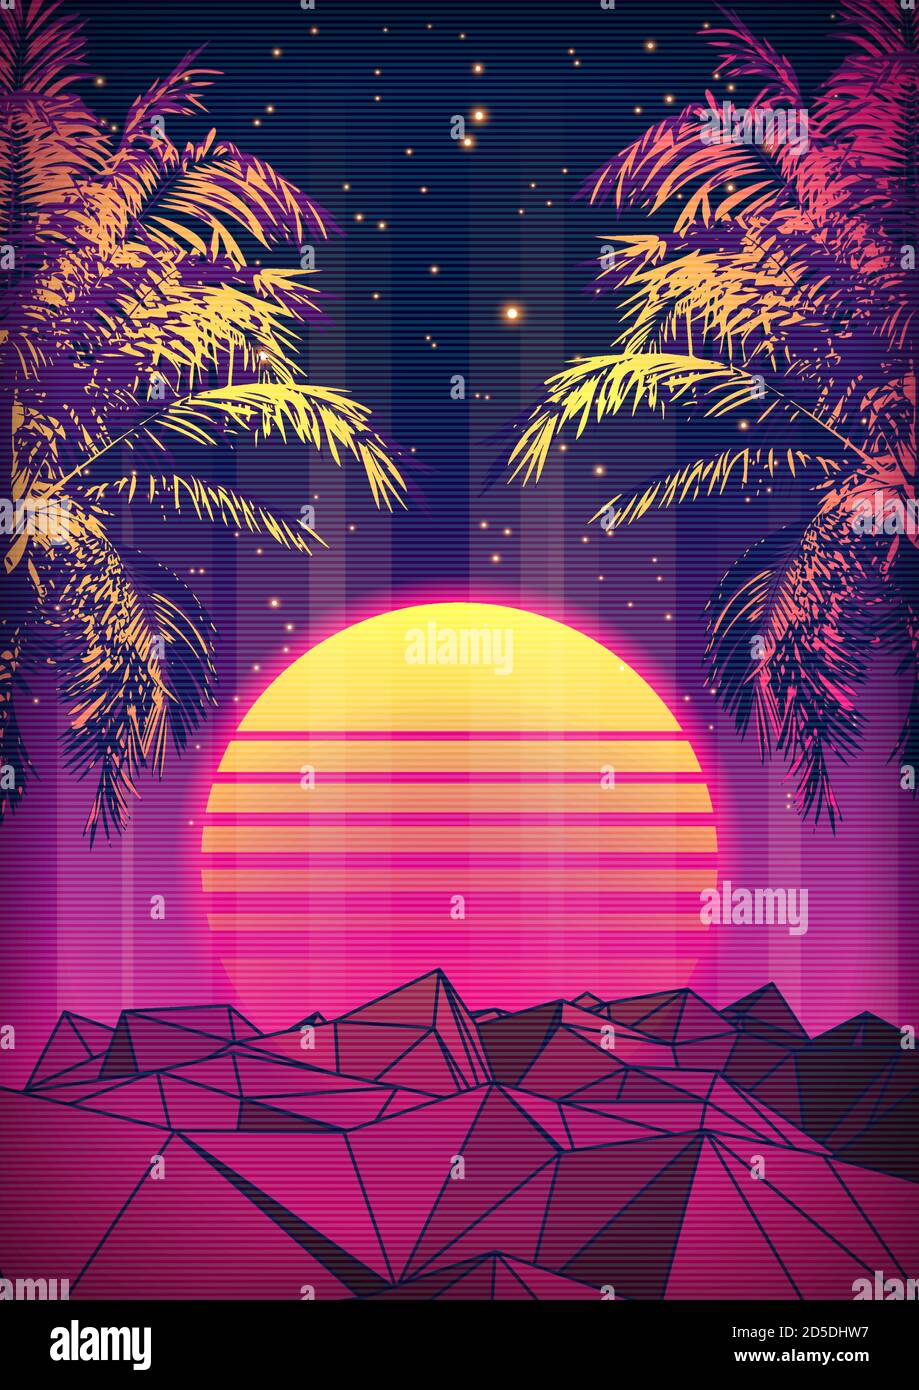 Retro 80s Style tropischer Sonnenuntergang mit Palm Tree Silhouette und Gradient Sky Hintergrund. Klassisches 80er Jahre Retro Design. Digitale Retro-Landschaft Cyber-Oberfläche. 80er Jahre Party Hintergrund. Trendige Vektorgrafik Stock Vektor